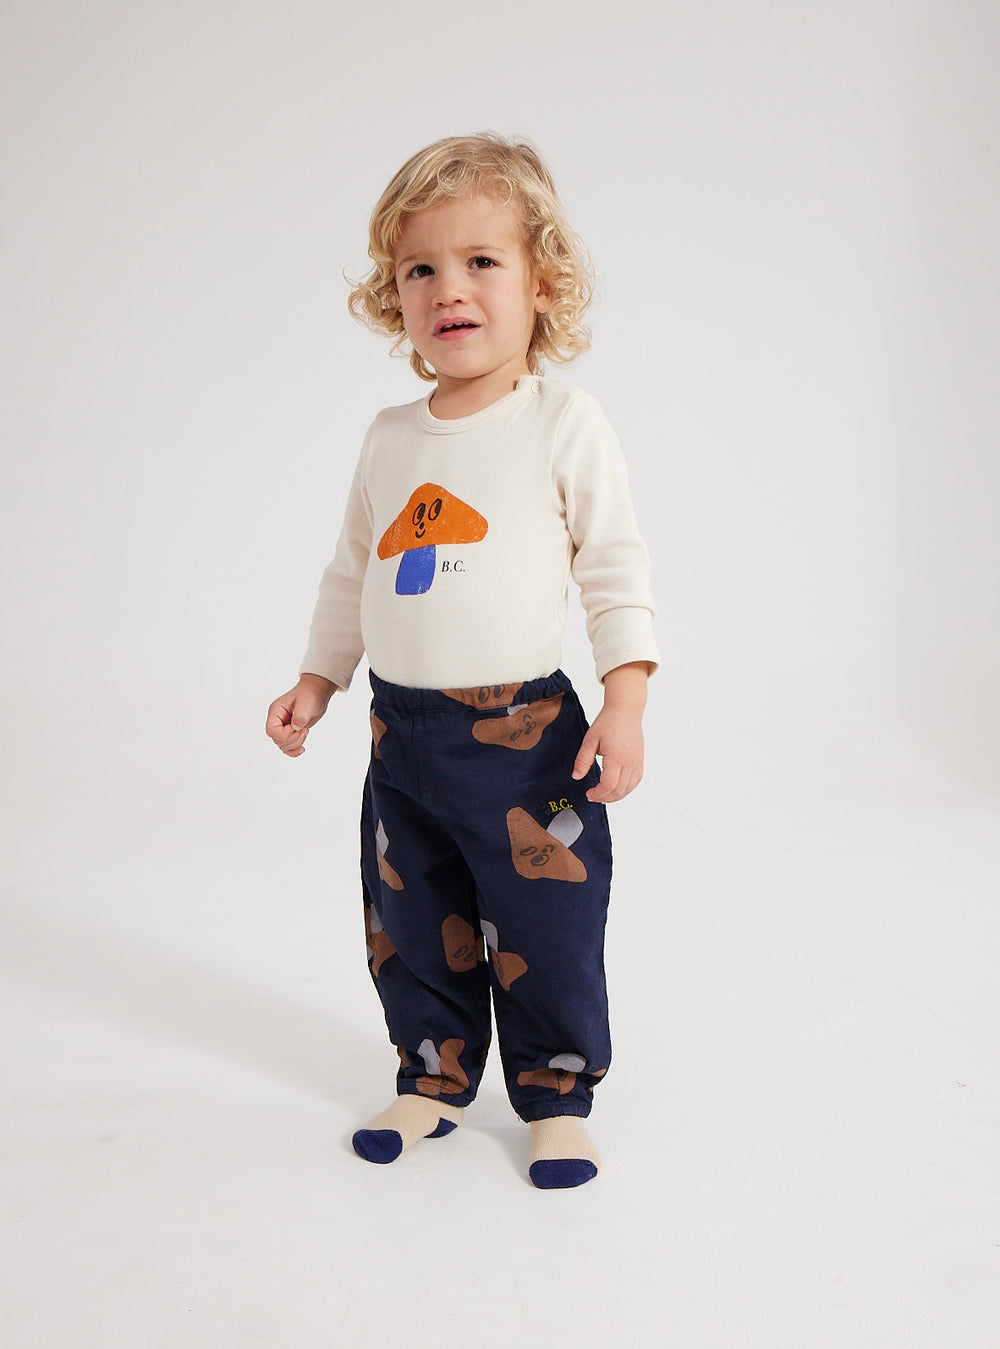 Bébé avec Body manches longues en coton bio crème avec imprimé champignon bleu et orange